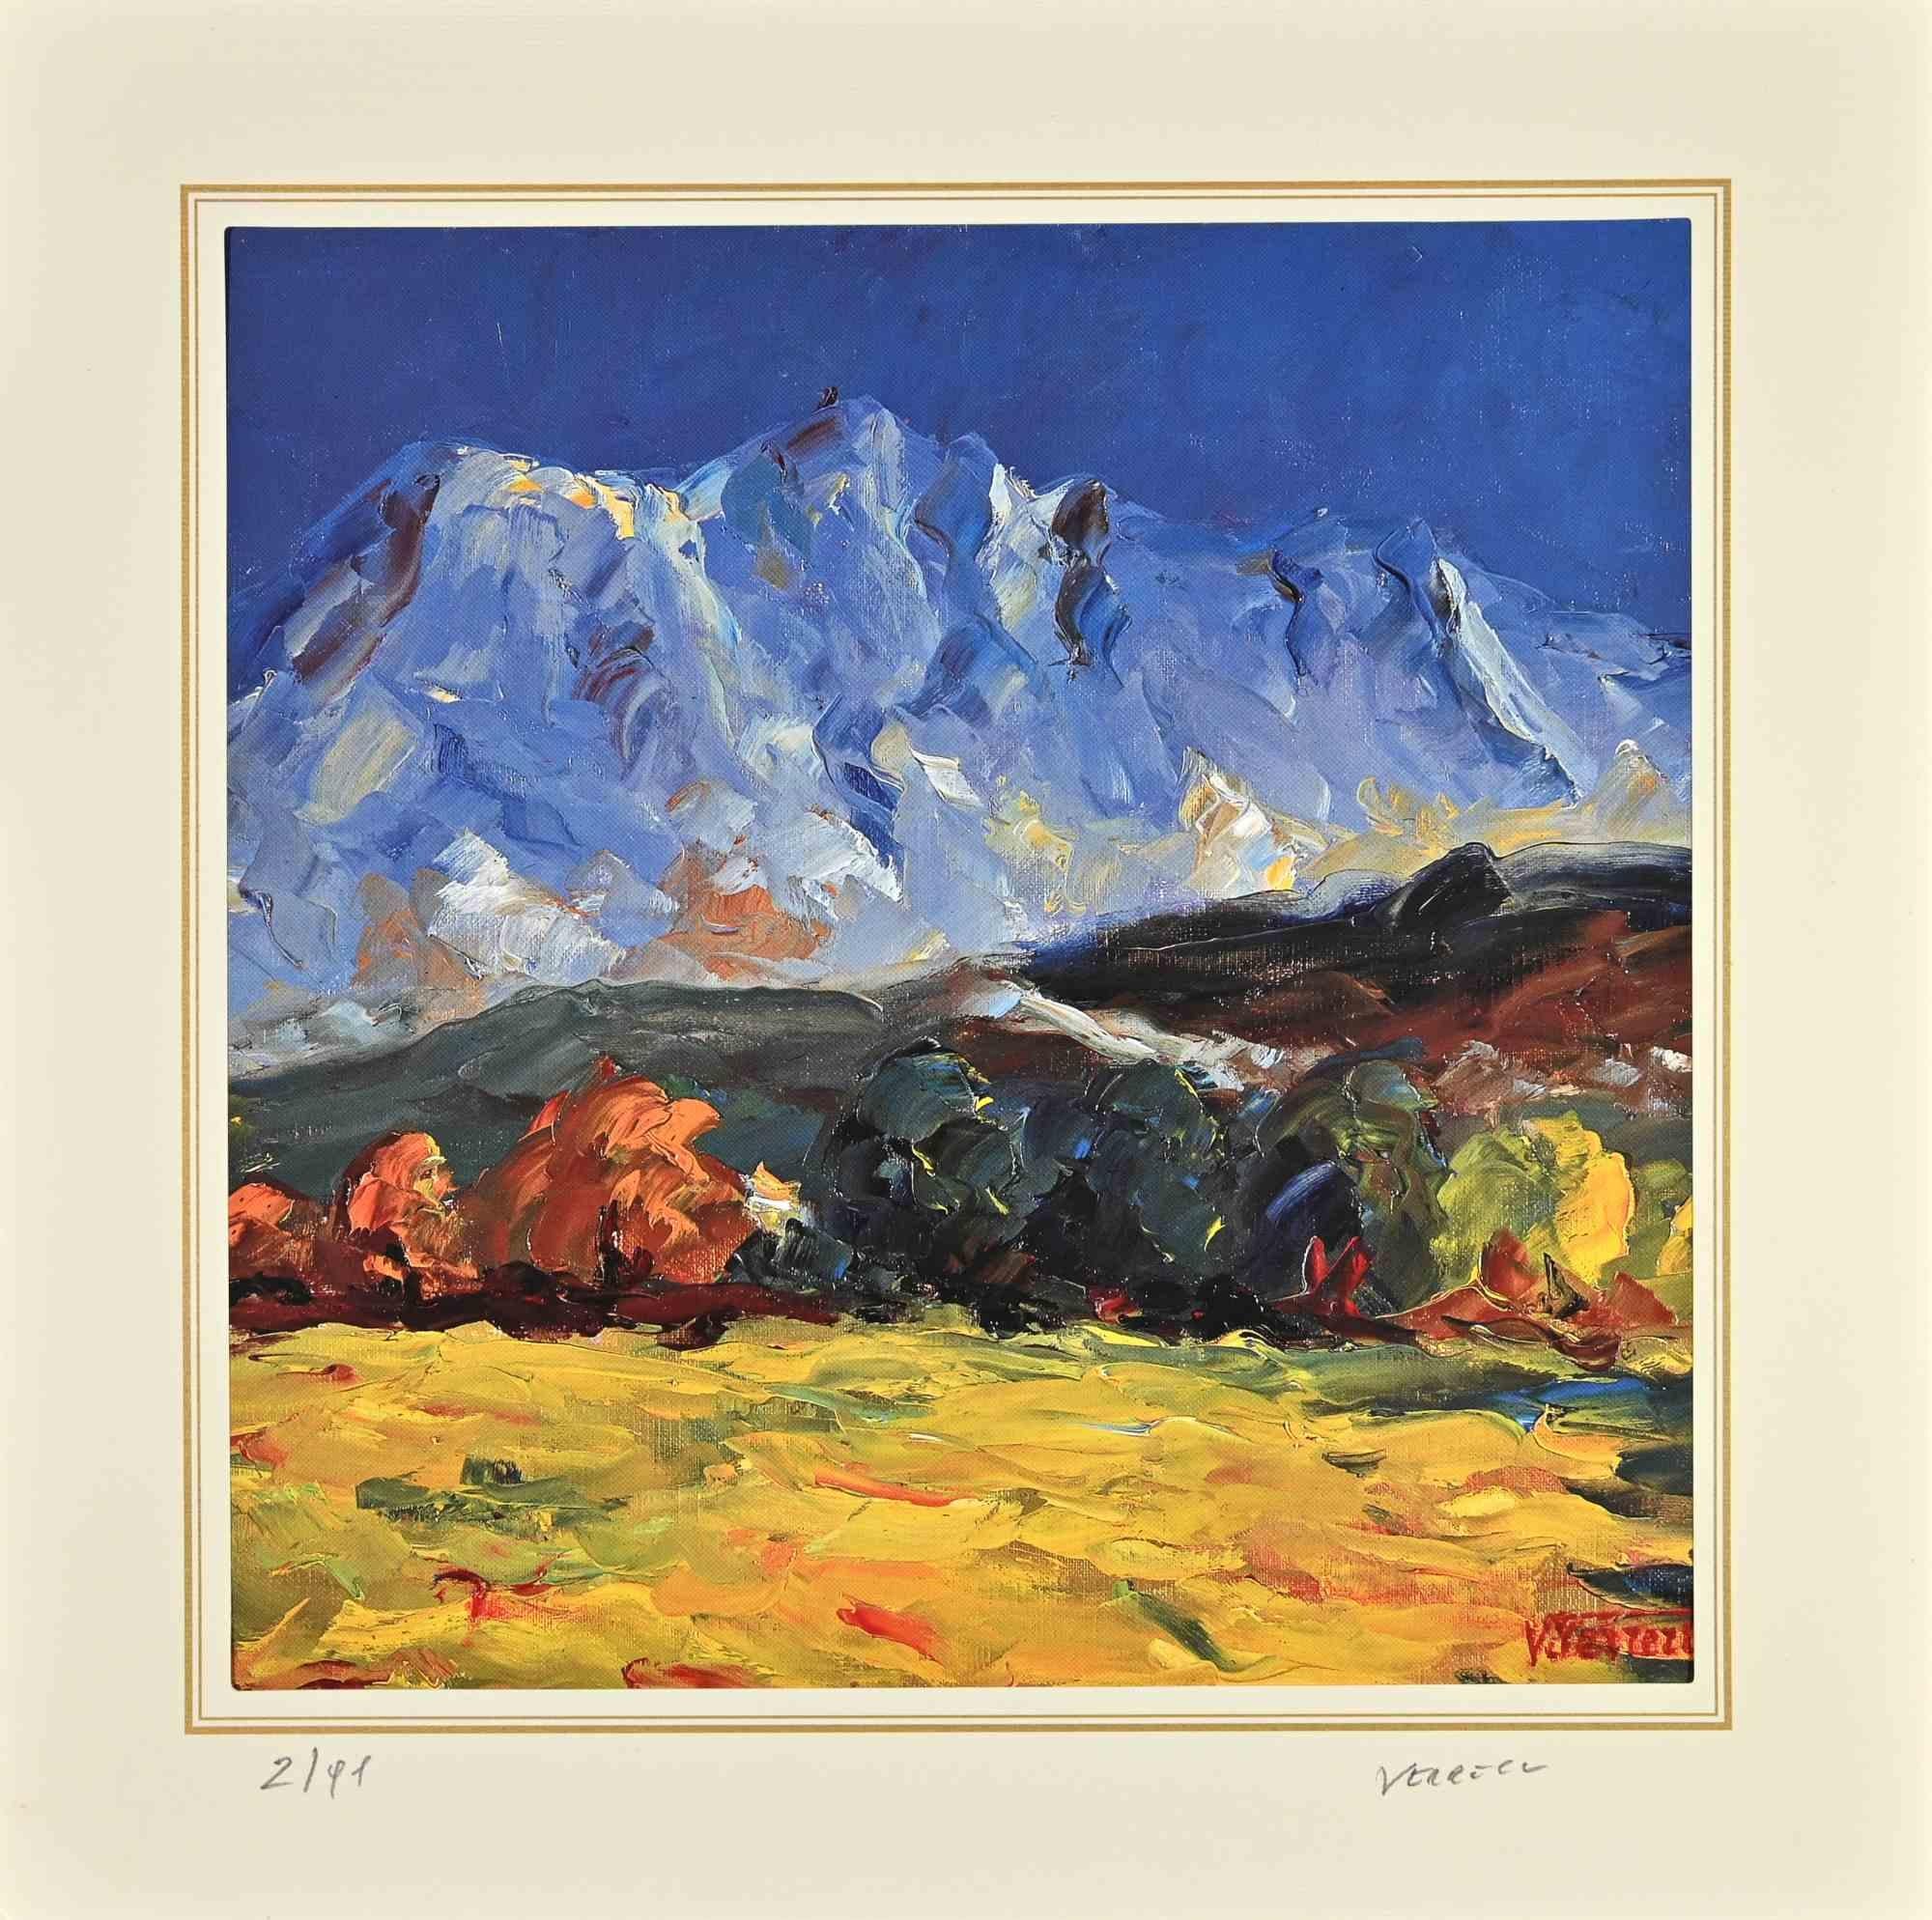  Landschaft  mit Bergen ist eine Lithographie, die Nicholas Verrall (1945) zugeschrieben wird.  im späten 20. Jahrhundert.

Handsigniert in der rechten Ecke. Nummeriert, Ausgabe, 2/99, am linken Rand. Auf der Rückseite befindet sich das Label des